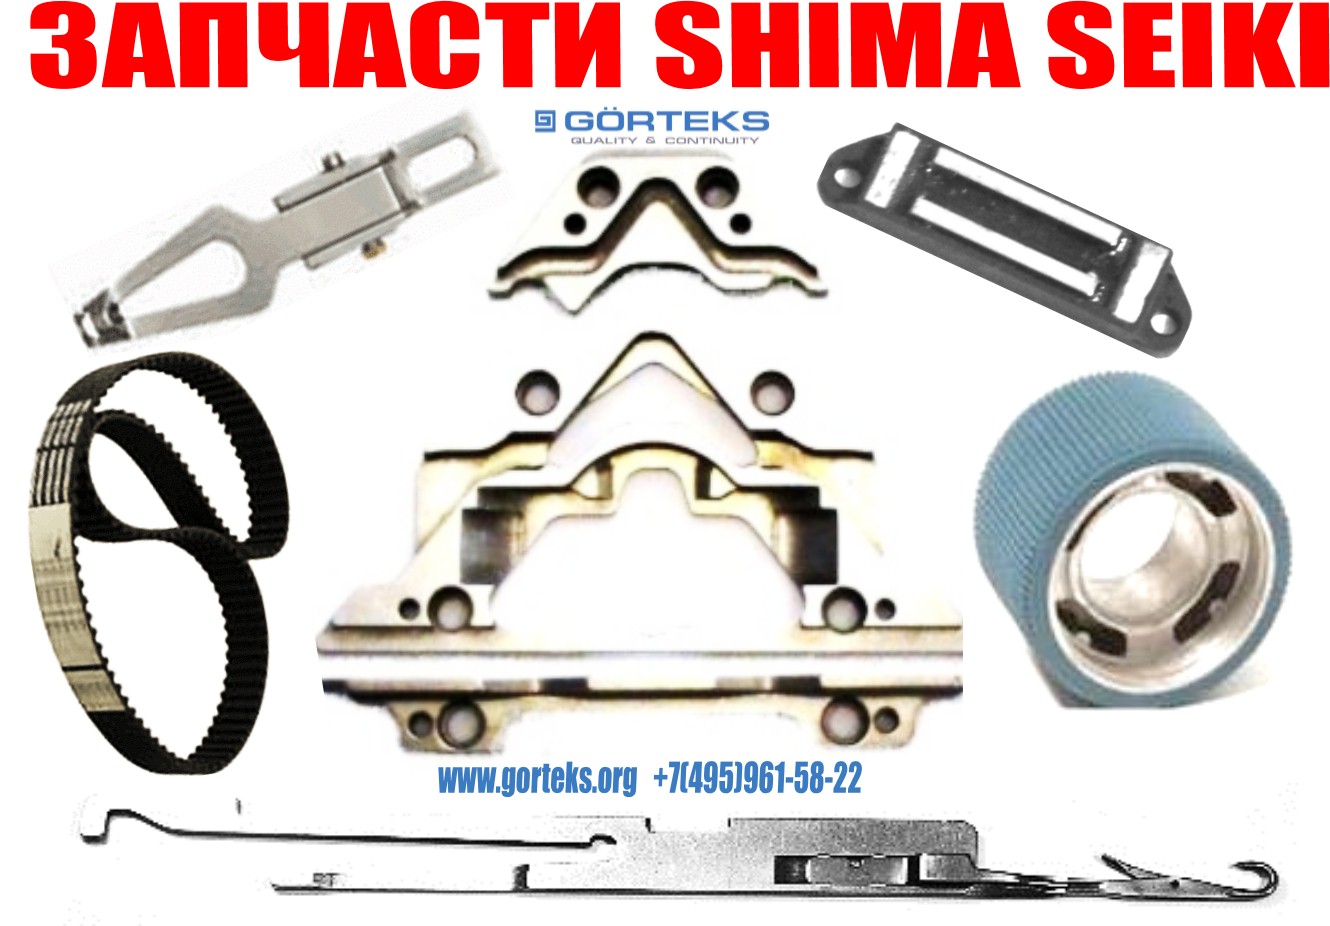 Запчасти для плосковязальных машин shima seiki-2015